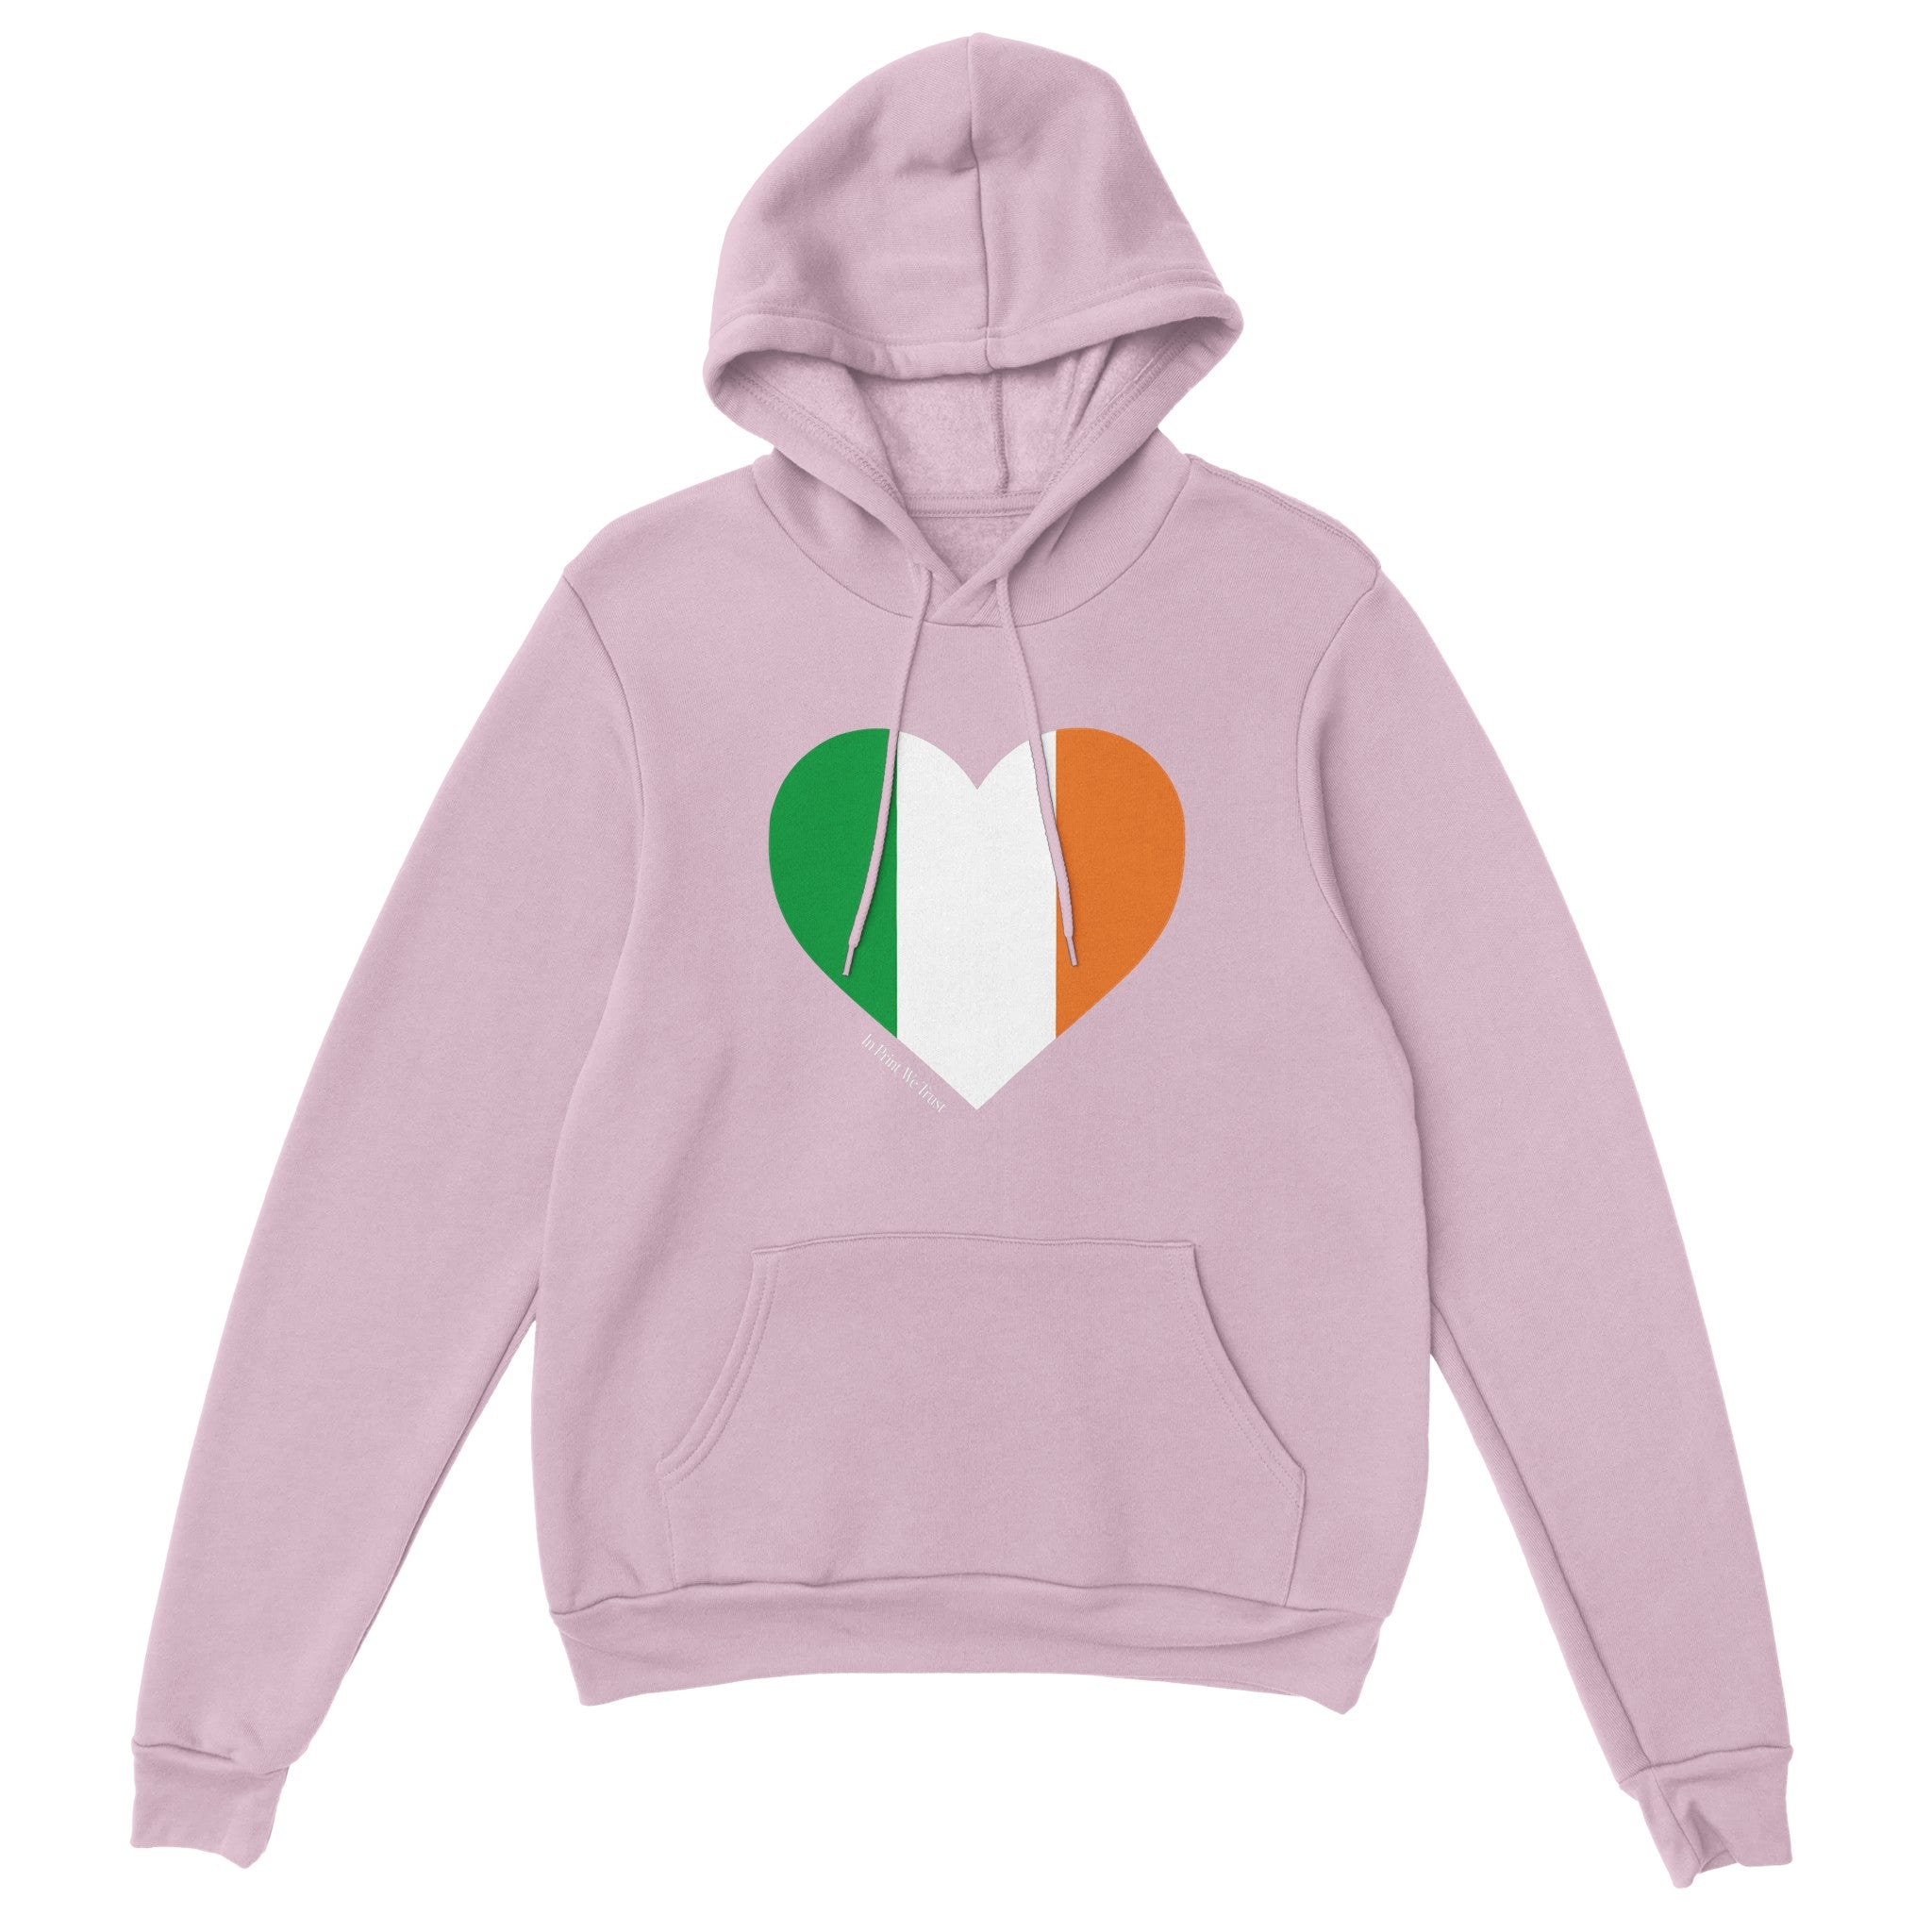 'Ireland' hoodie - In Print We Trust